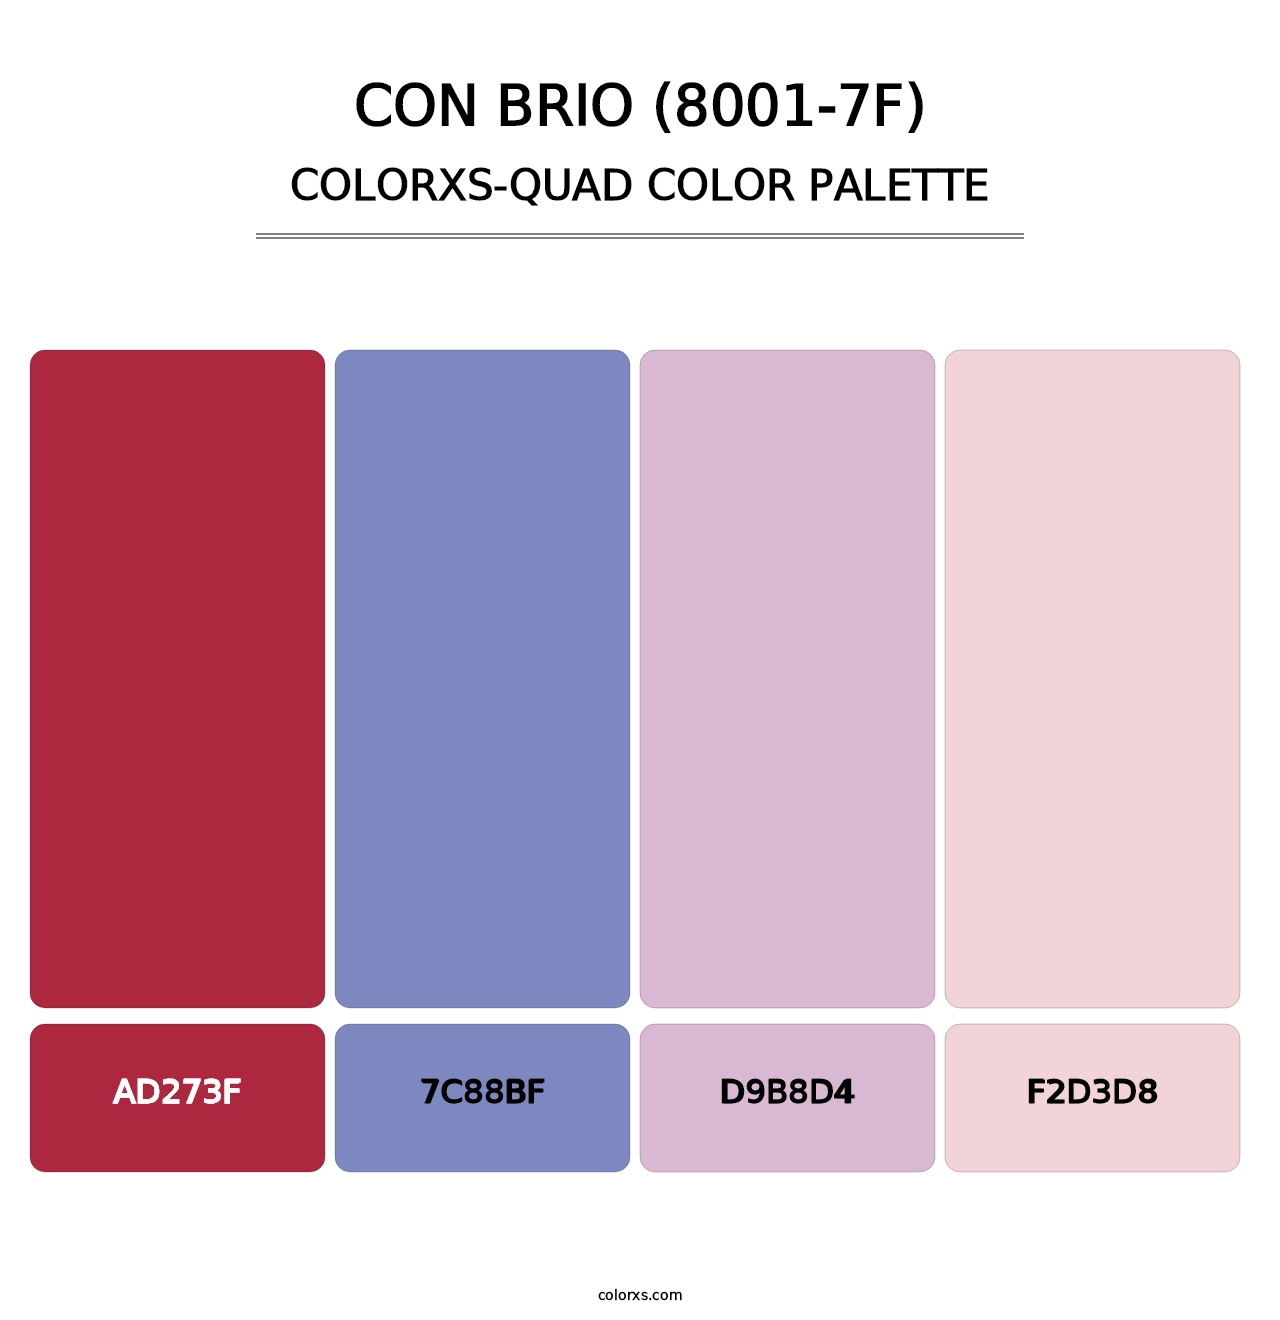 Con Brio (8001-7F) - Colorxs Quad Palette